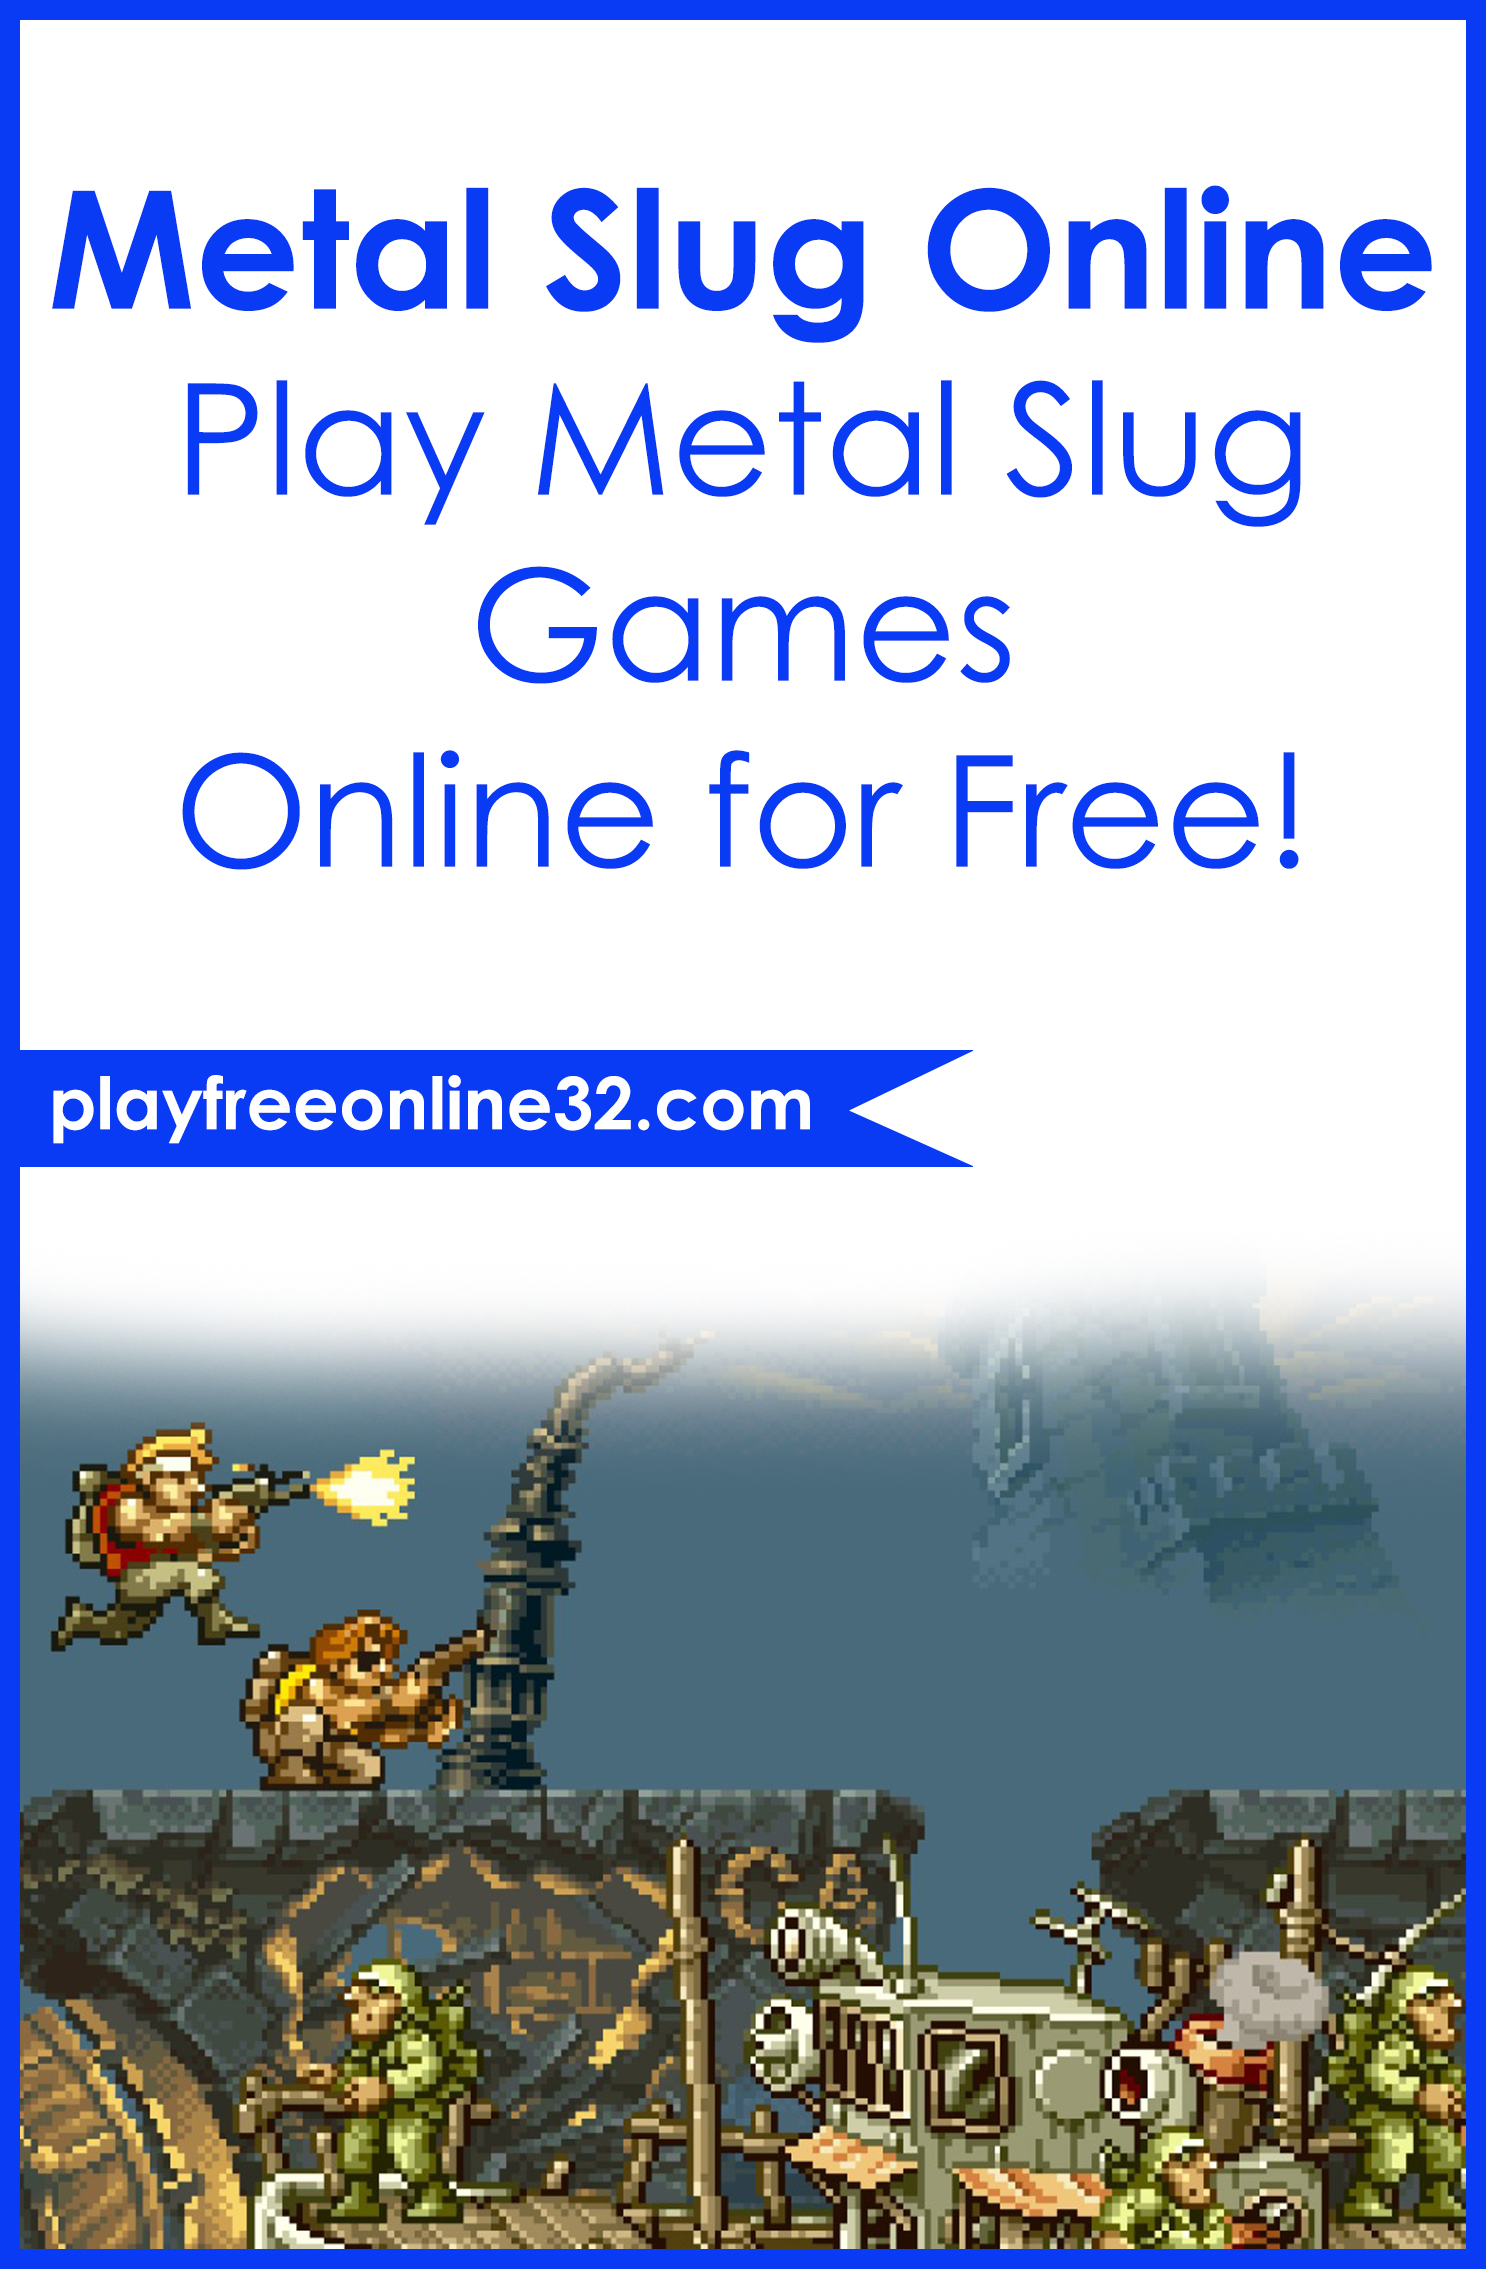 metal slug online plaqy games